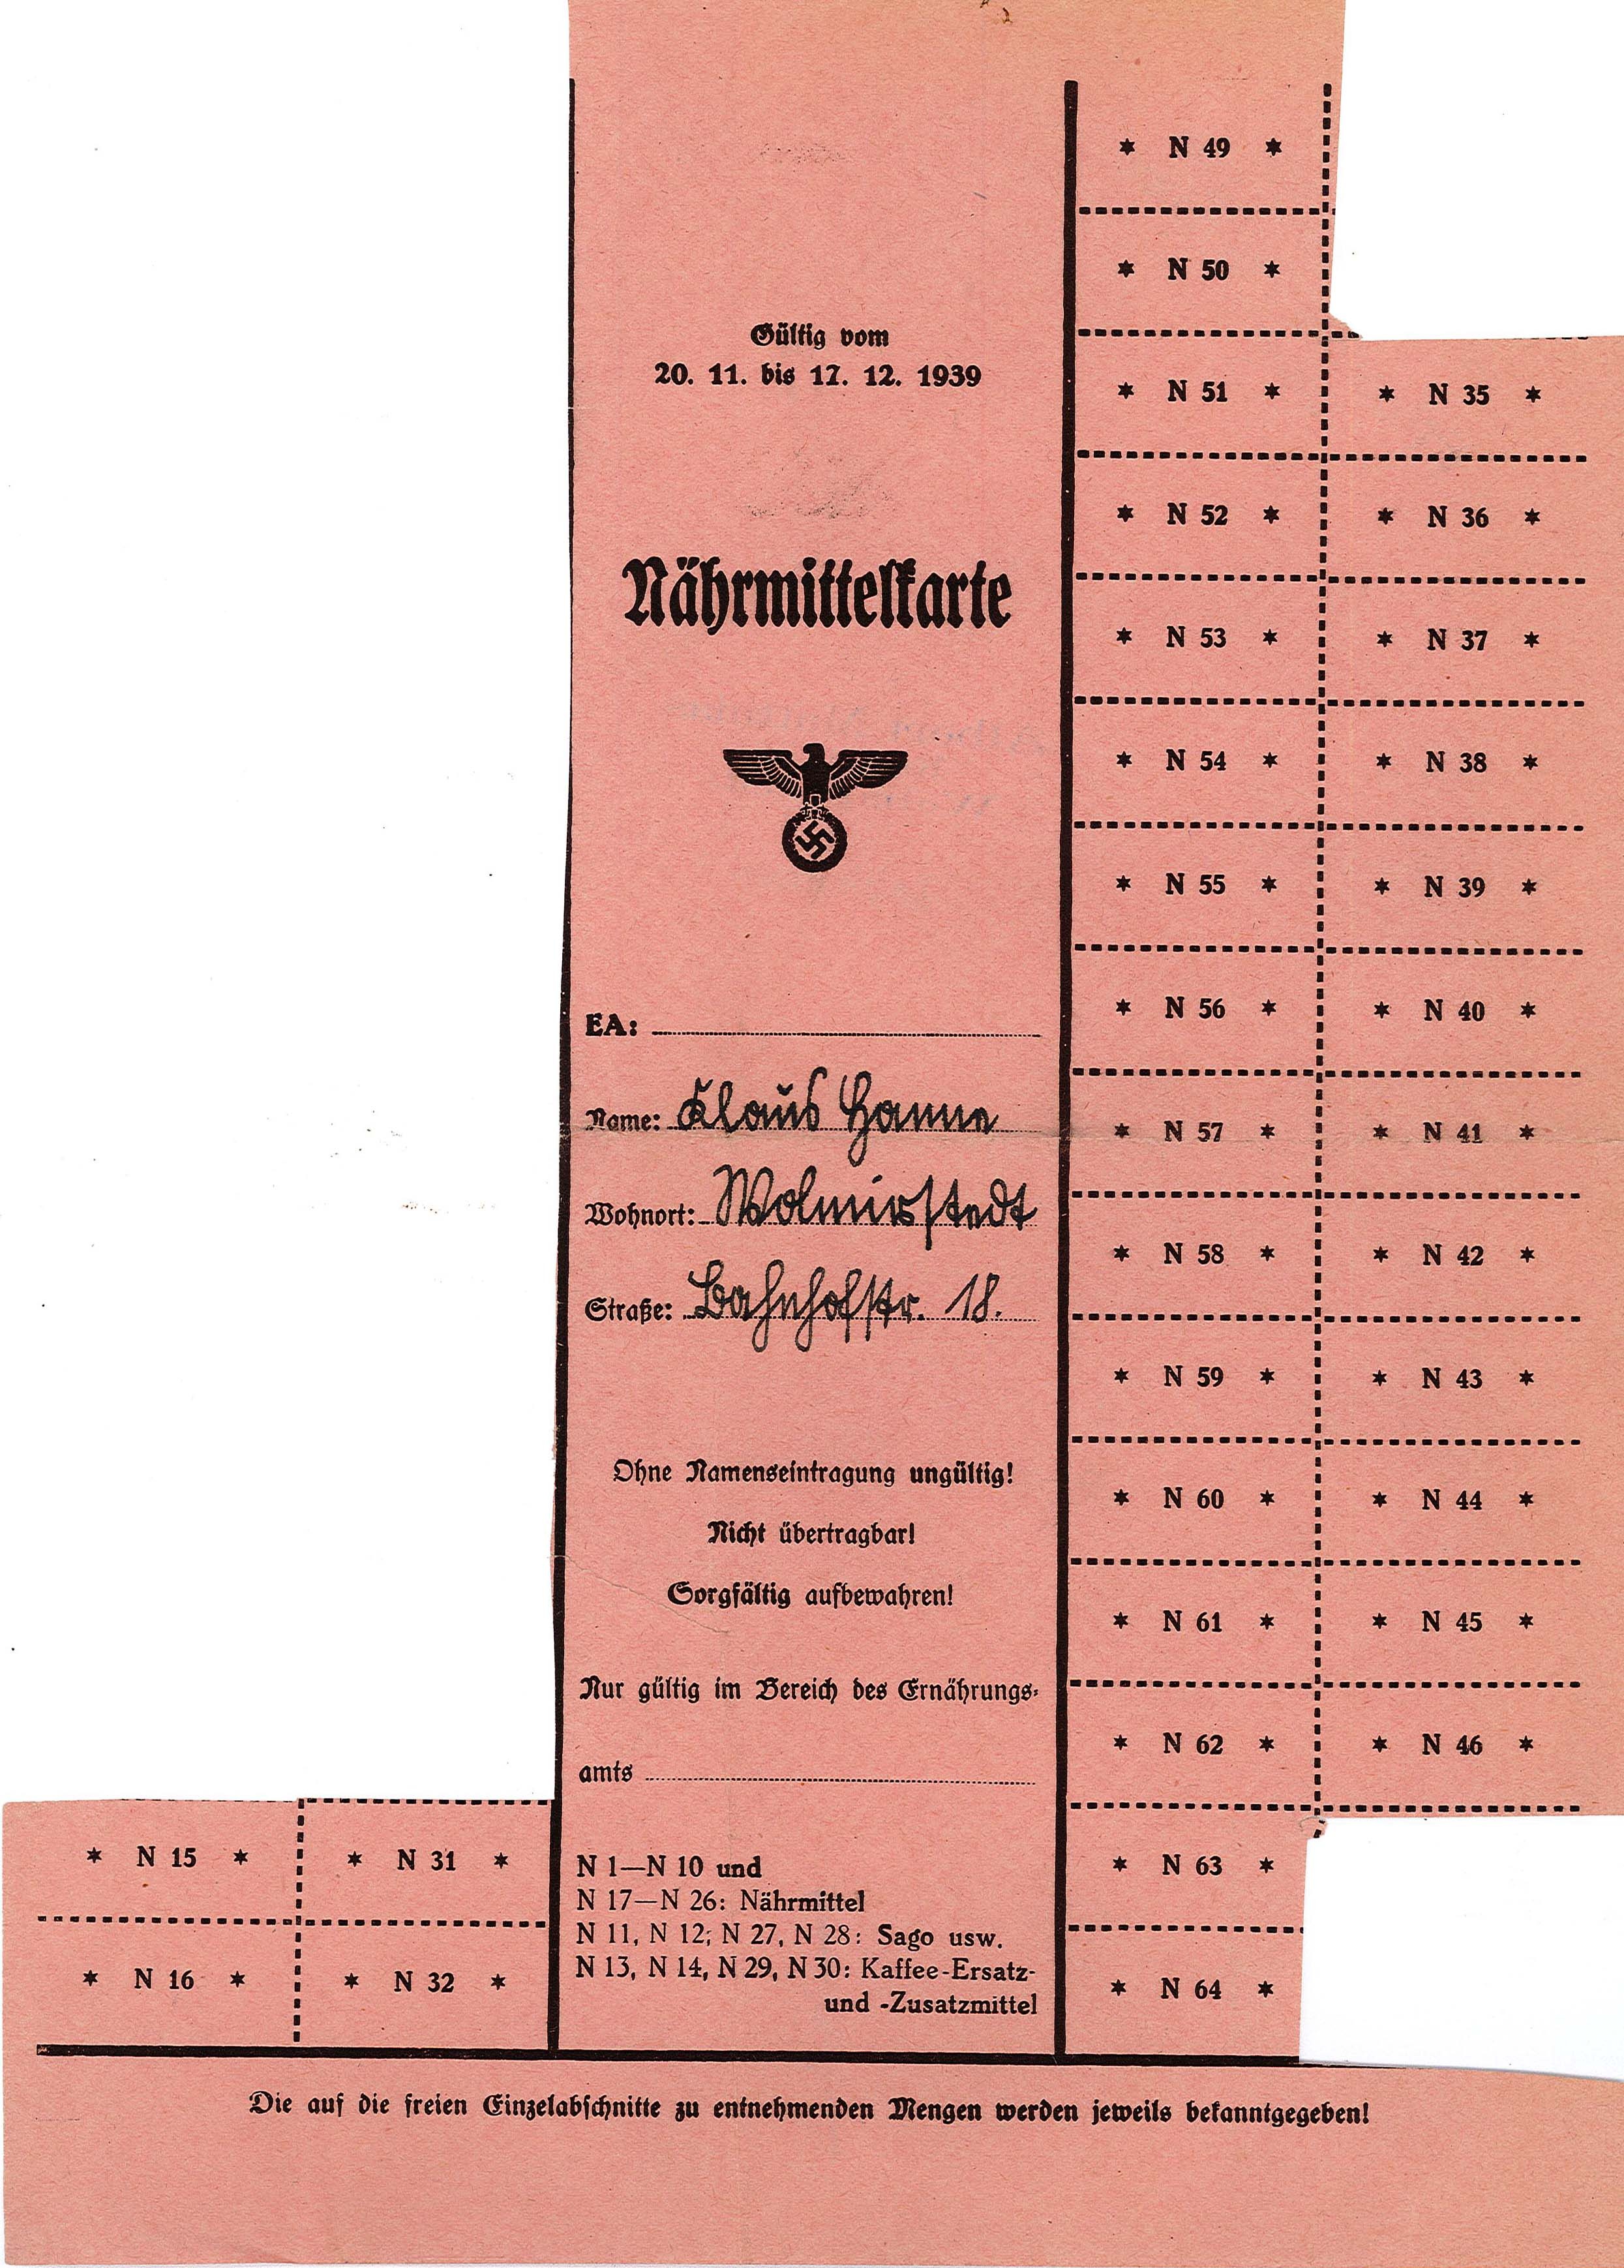 Nährmittelkarte für Klaus Hanne, 1939 (Museum Wolmirstedt RR-F)